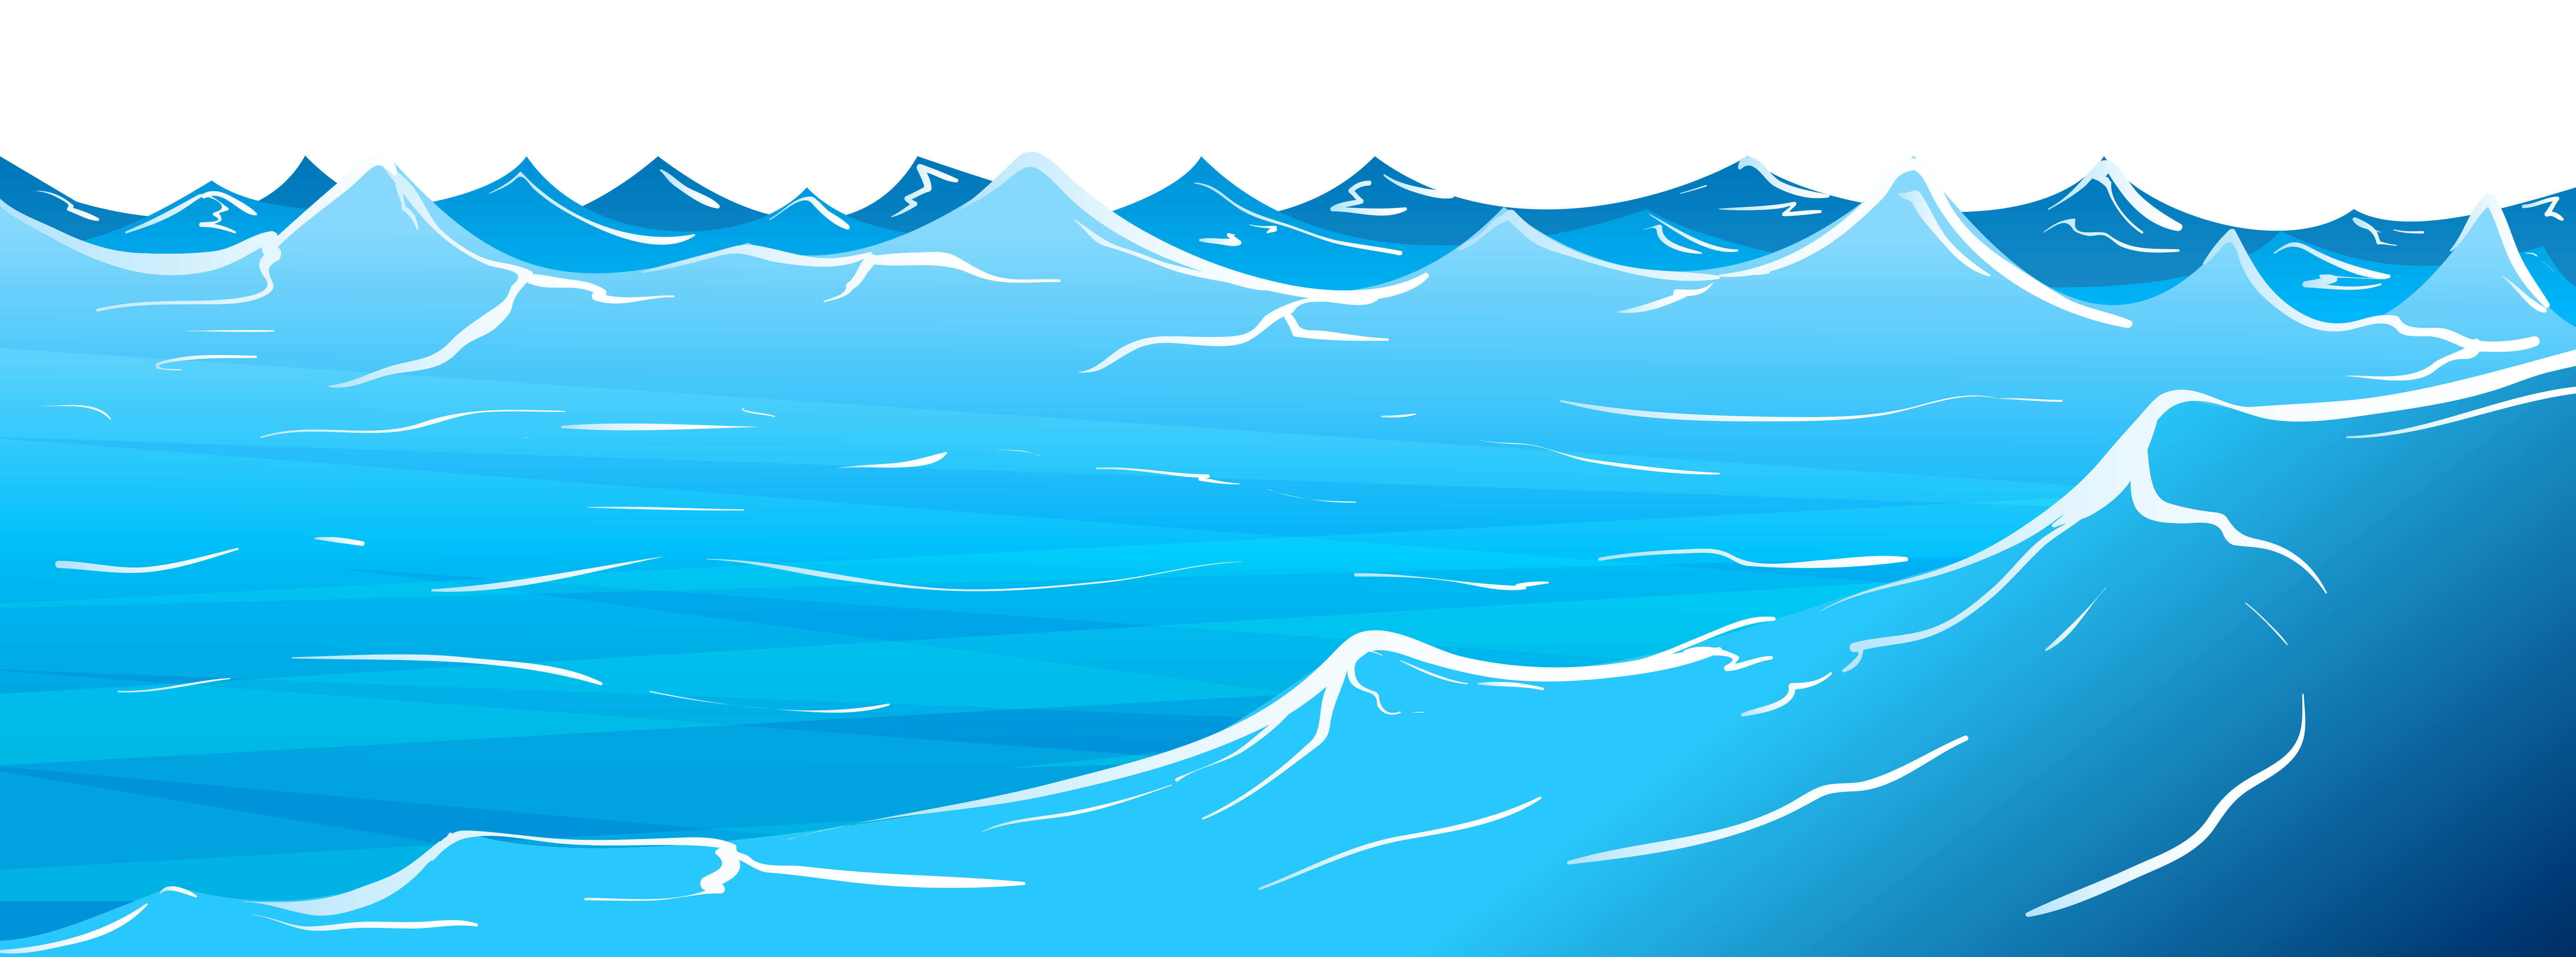 ocean water clipart